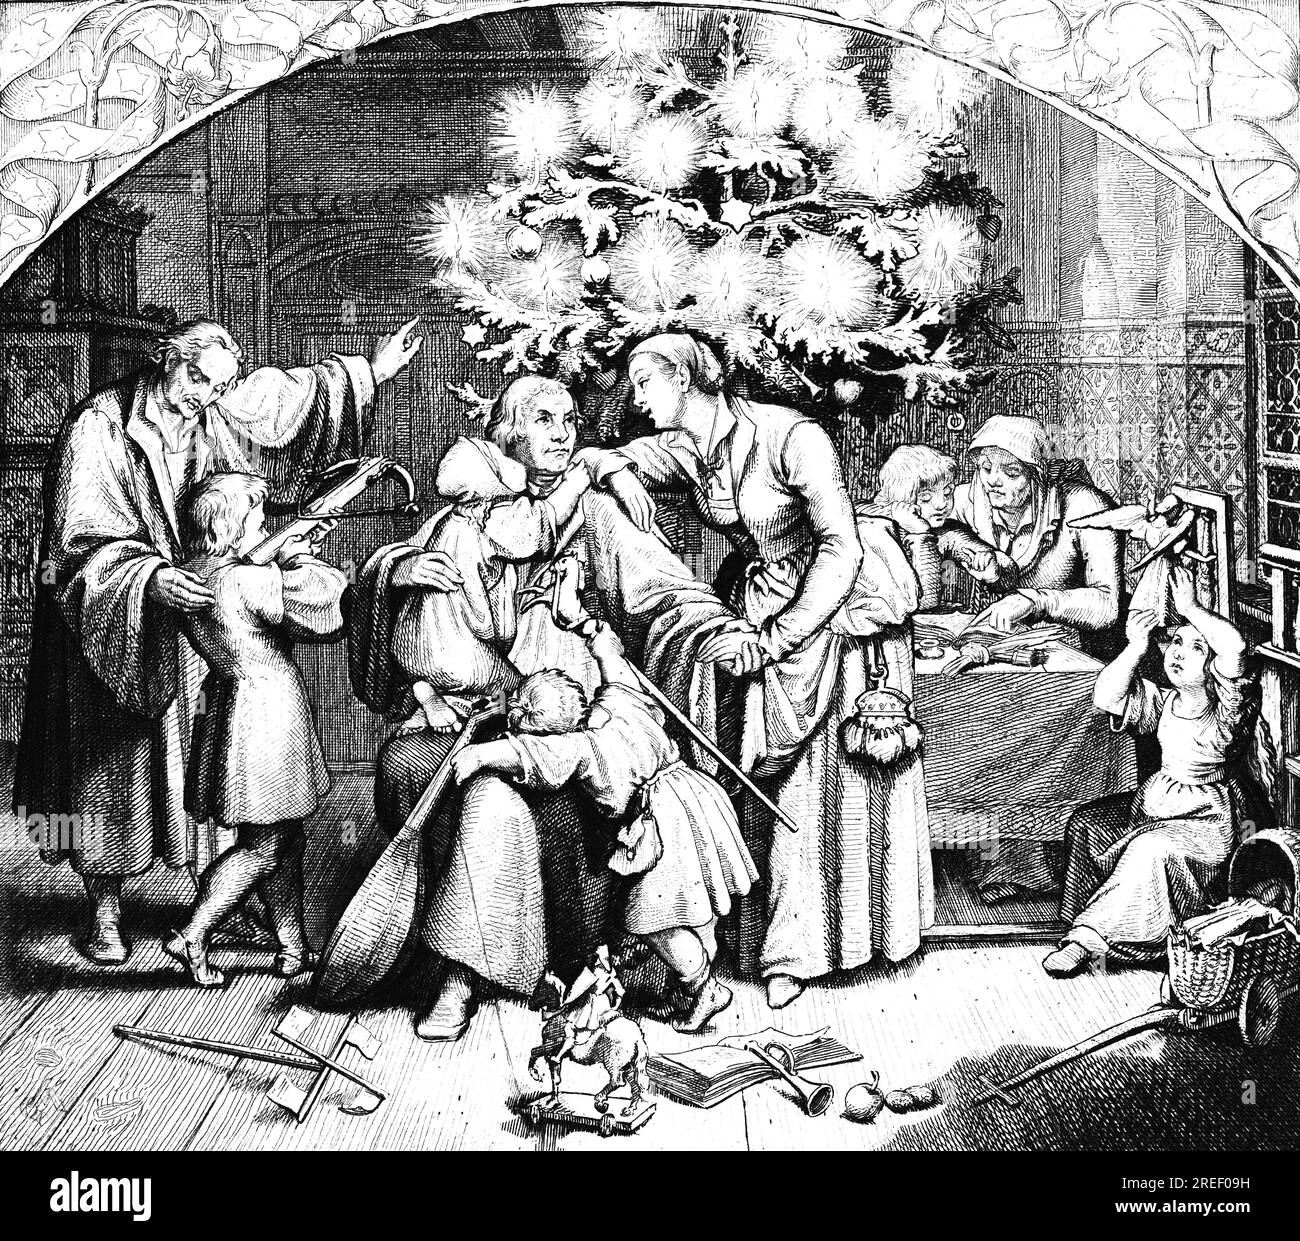 Les joies hivernales de Martin Luther avec sa famille, chambre, hiver, joie, Noël, arbalète, cadeaux, sapin, lumières, bougies, religion, enfants, femme Banque D'Images